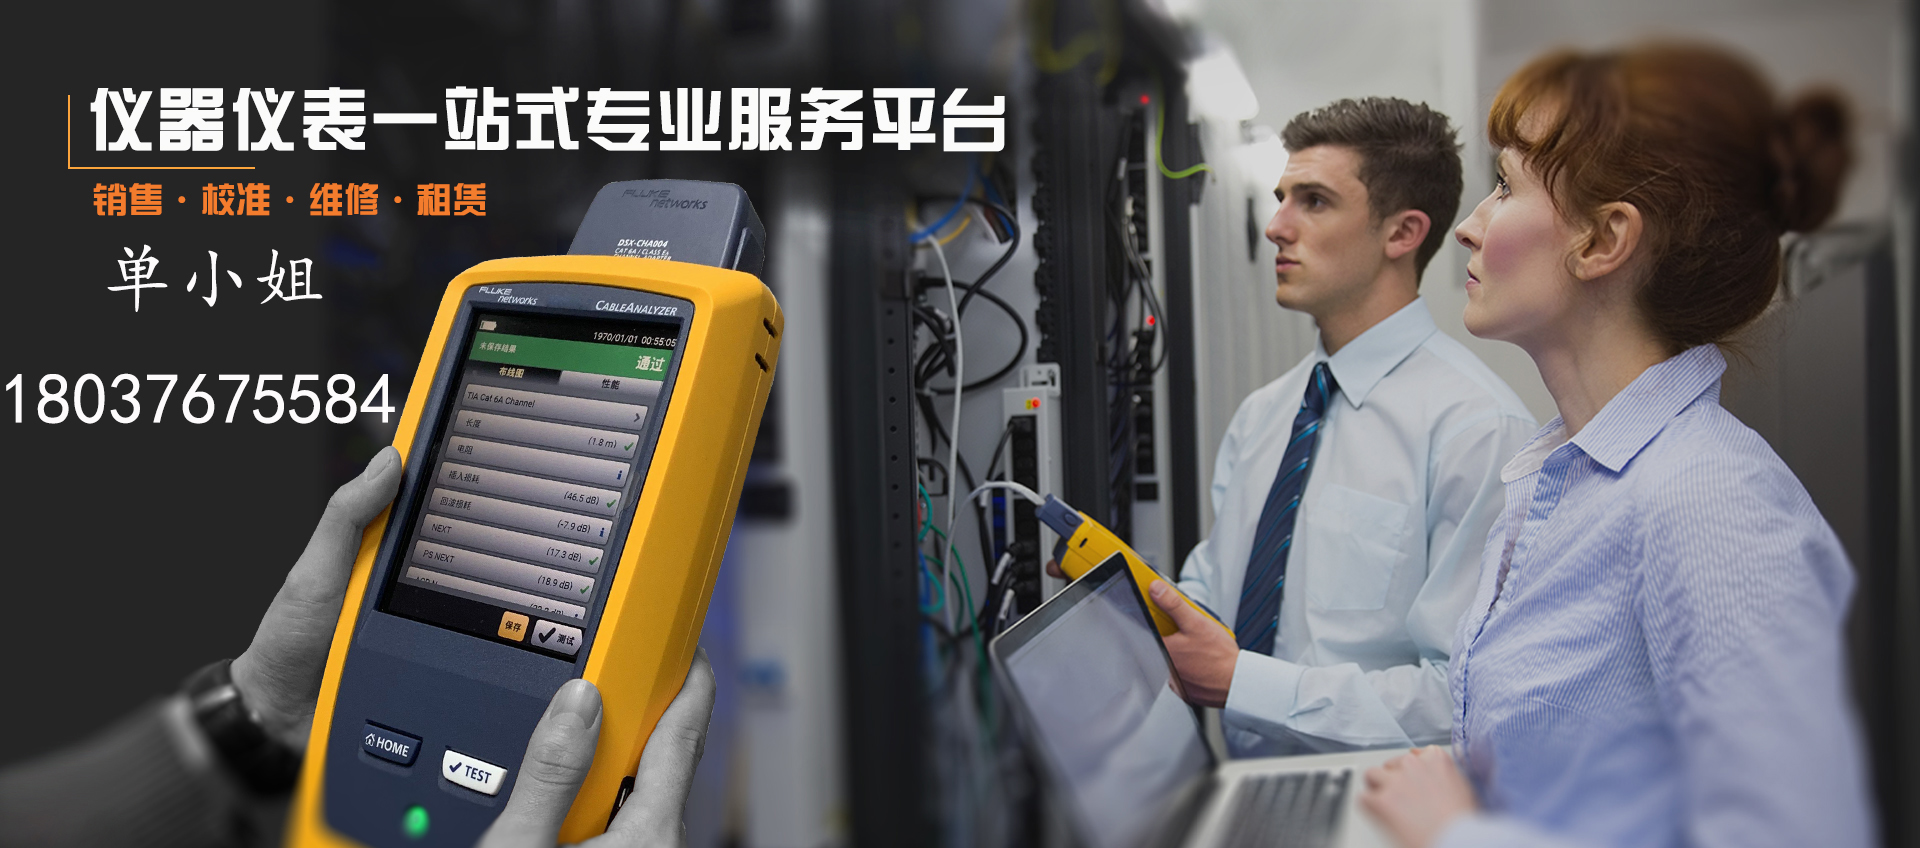 上海周边光纤熔接测试 网络故障抢修光缆熔接 通过FLUKE测试报告